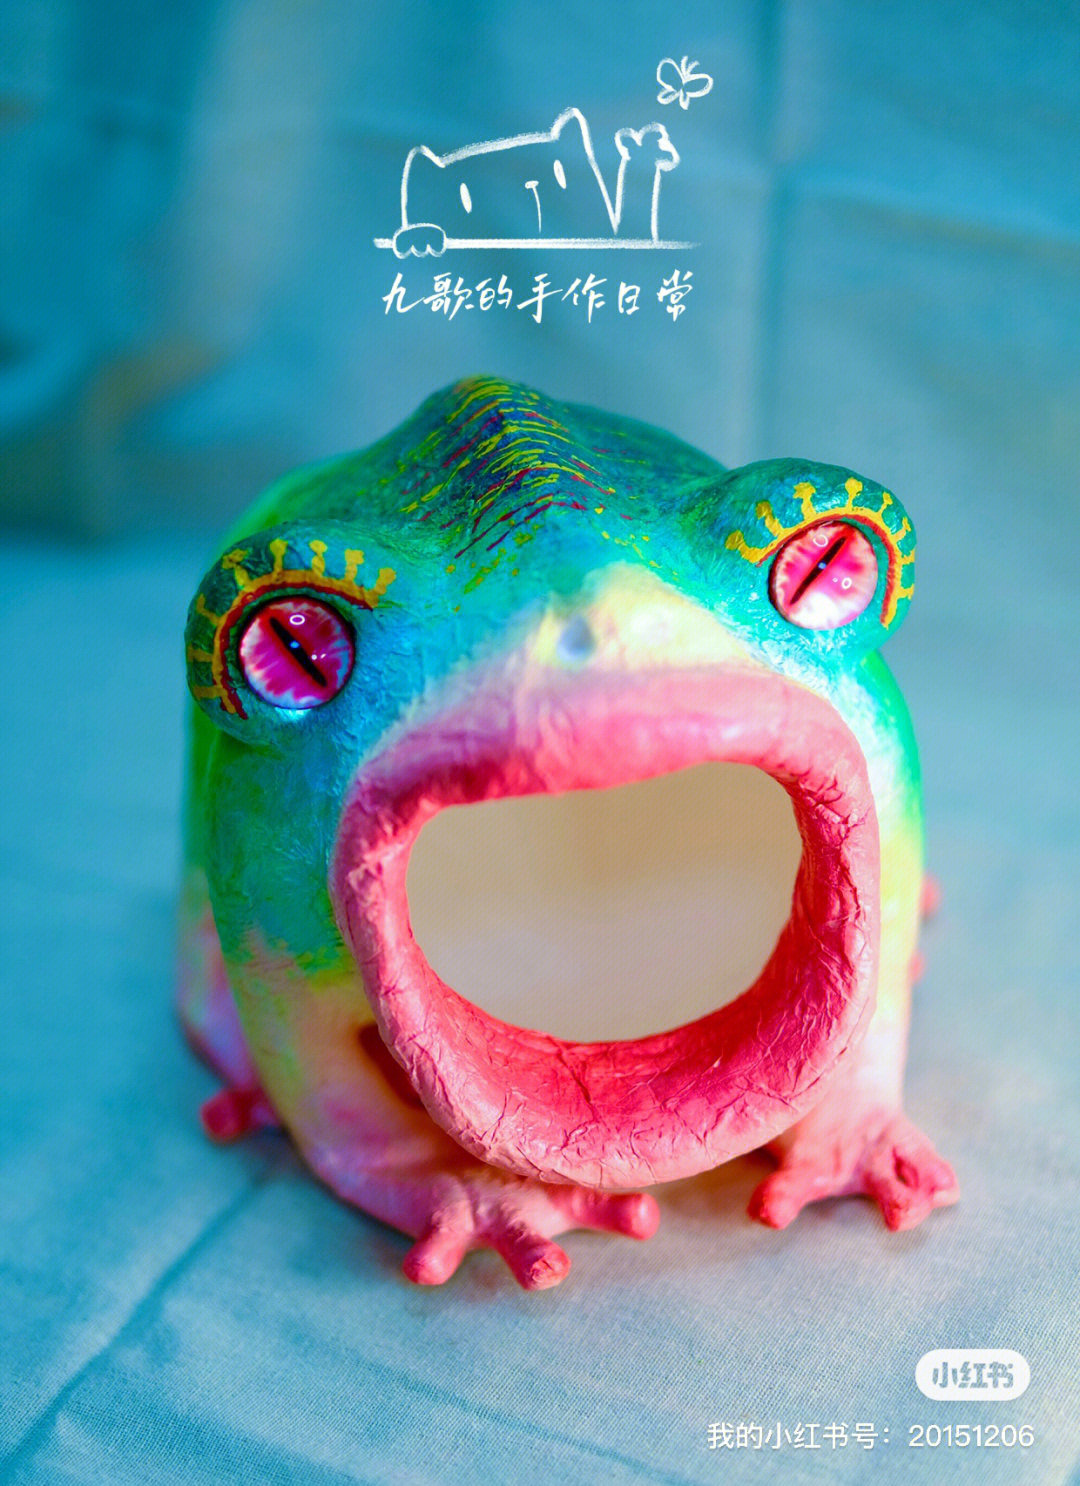 大嘴蛙瓷砖图片